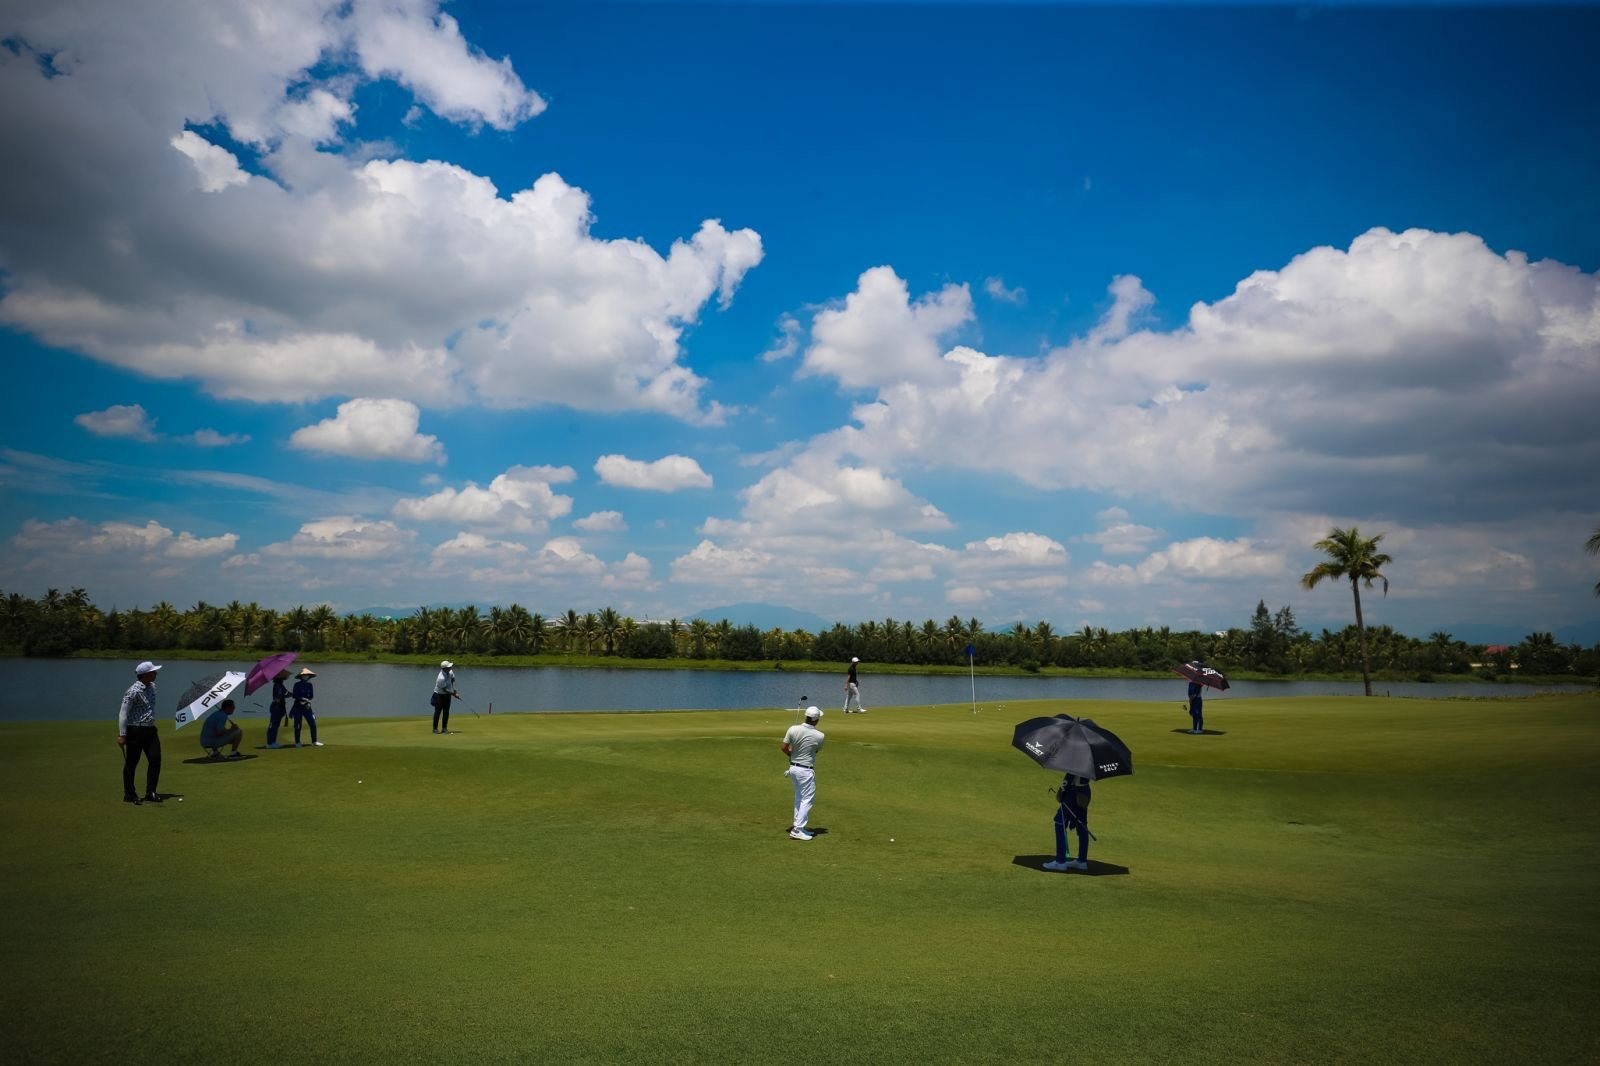 Sân golf BRG Đà Nẵng, nơi được cho là xảy ra vụ việc golfer Nguyễn Viết Dũng đánh nữ nhân viên phục vụ hôm 6.12. Ảnh: BRG